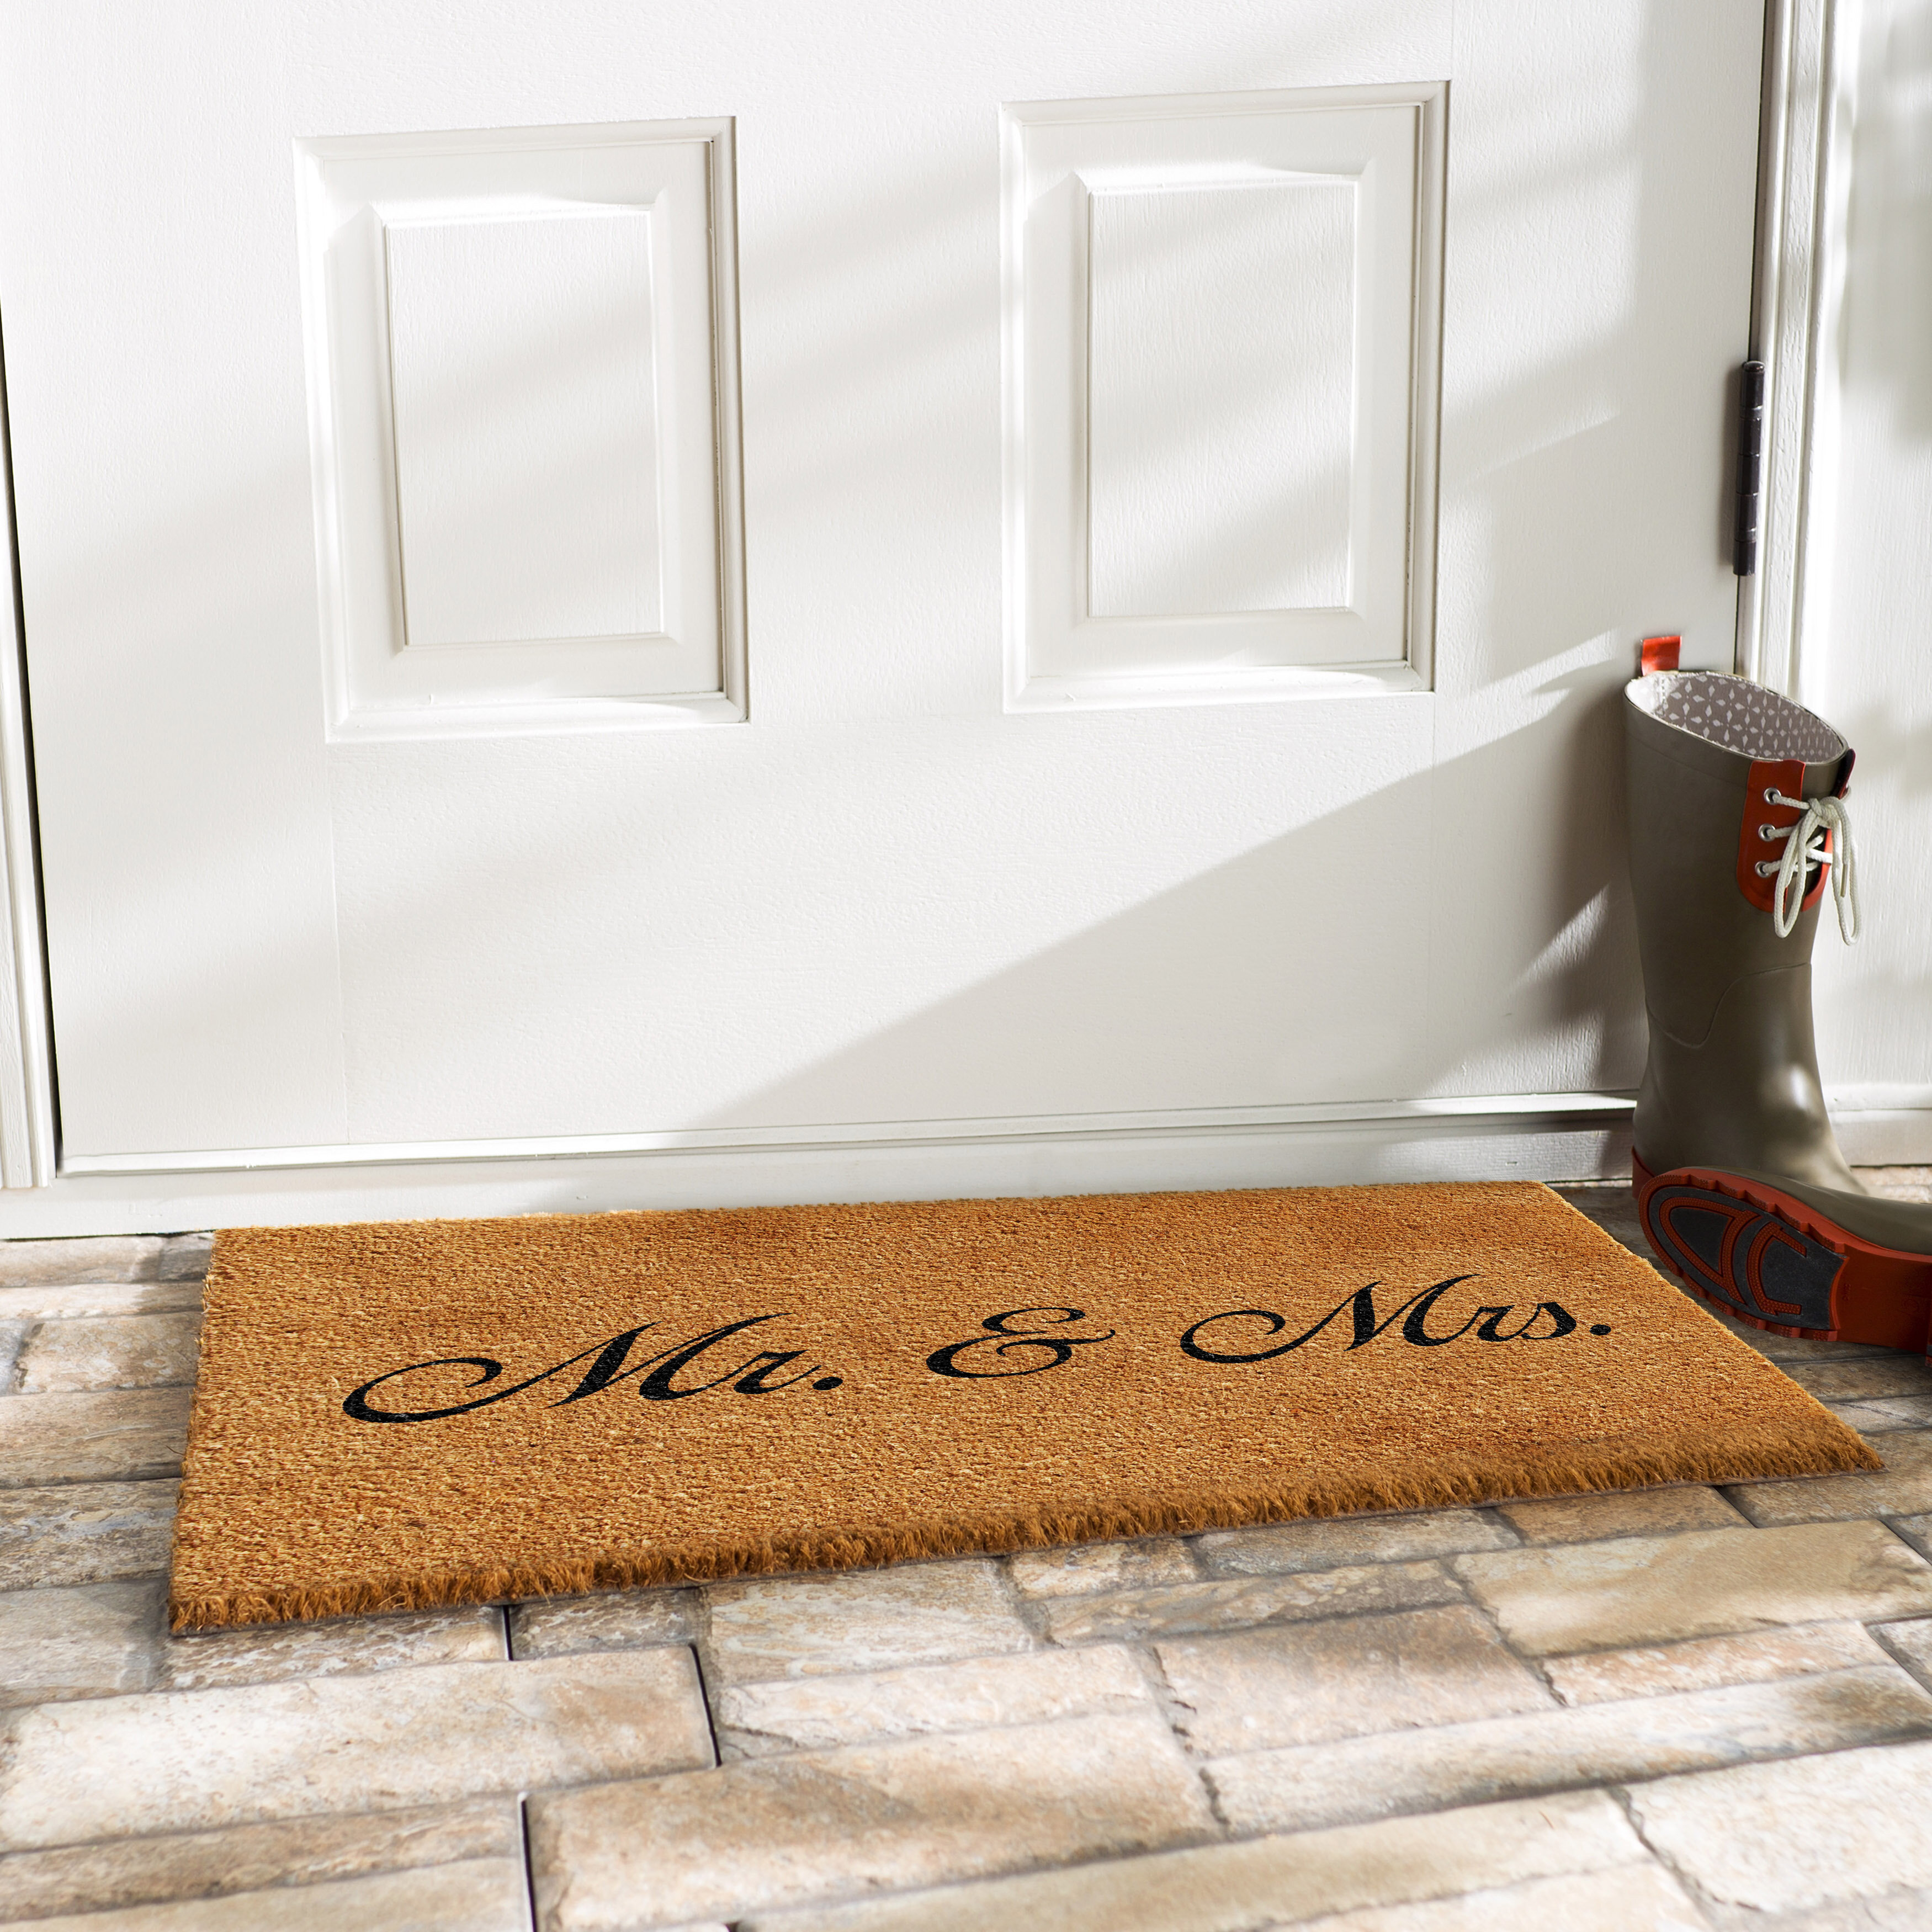 Shoe Mat Beware of Mr. Sanders Doormat Front Door Decor Welcome Rugs Front  Door Outdoor ( Size : 50X80CM )